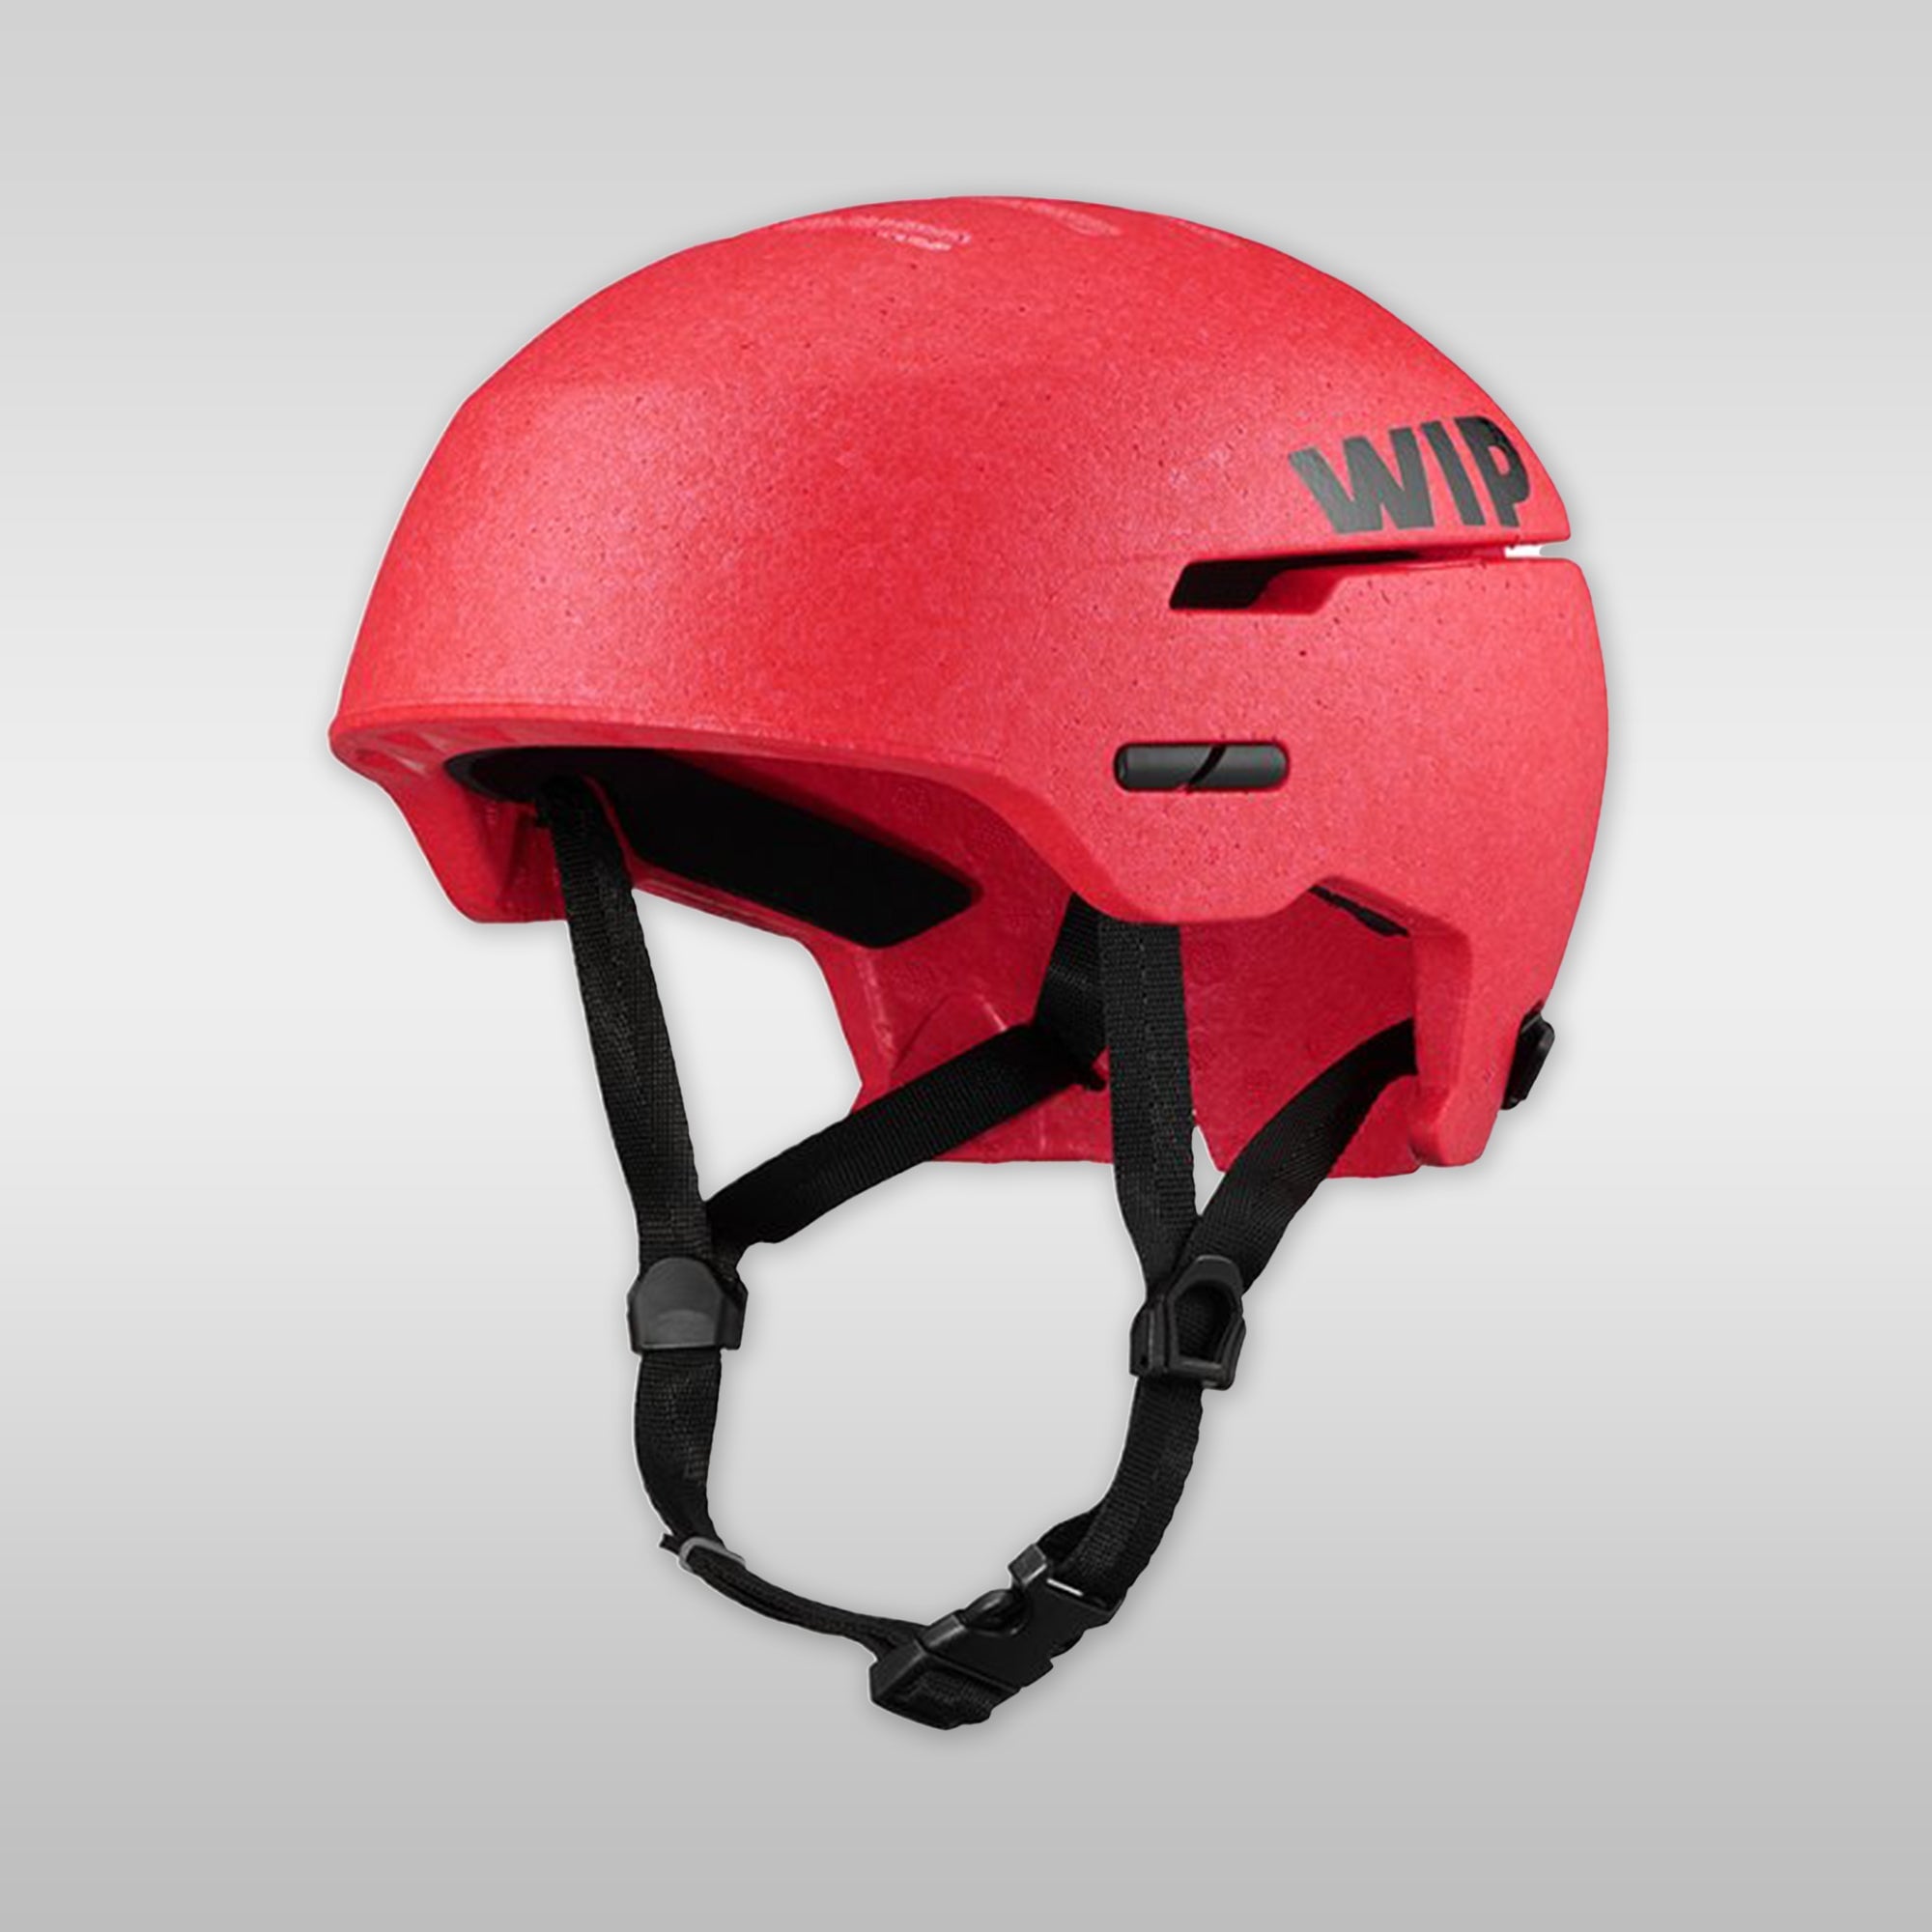 WIP Fordward Watersports windsurfing wingfoil Helmet Wiflex